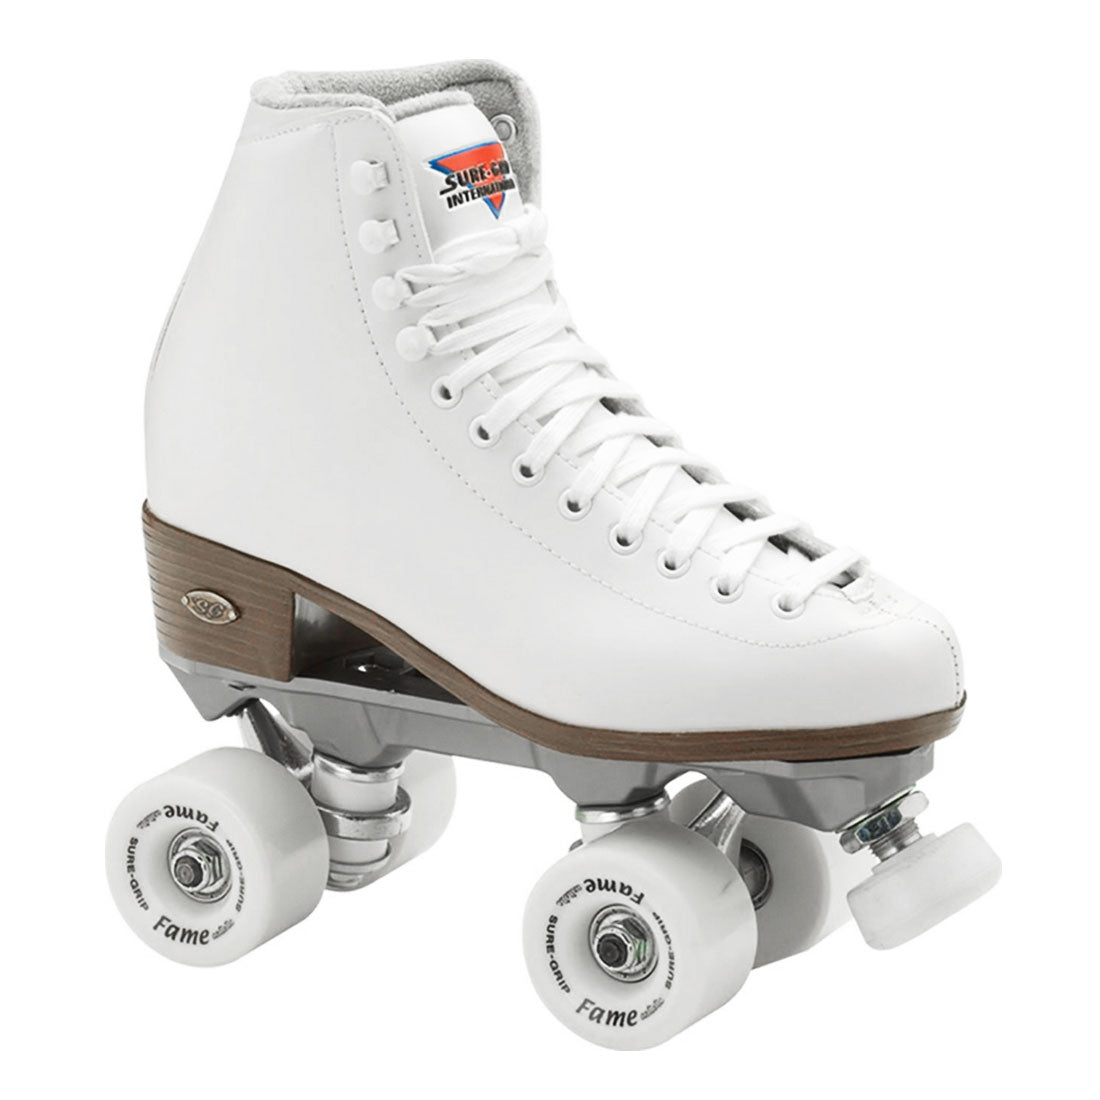 Sure-Grip Fame Skate - White Roller Skates